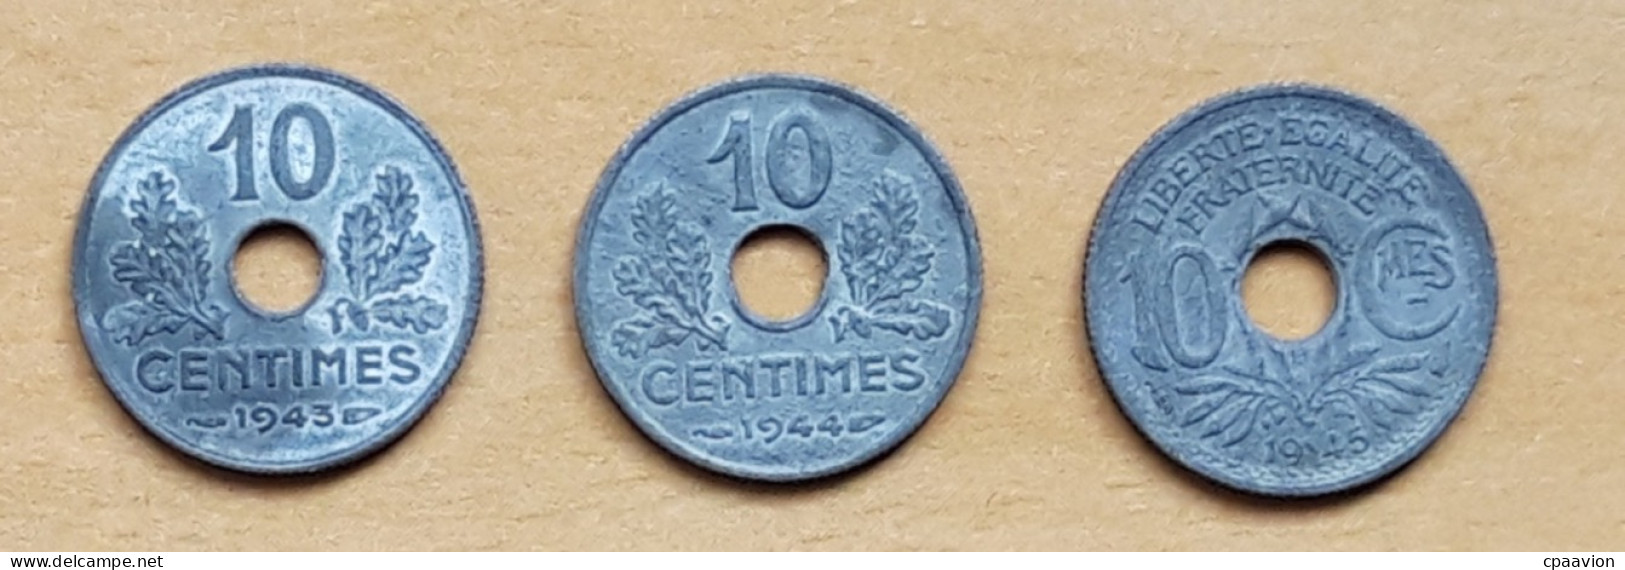 3 PIÈCES: 10 CENTIMES (1943, 1944, 1945) - 10 Centimes